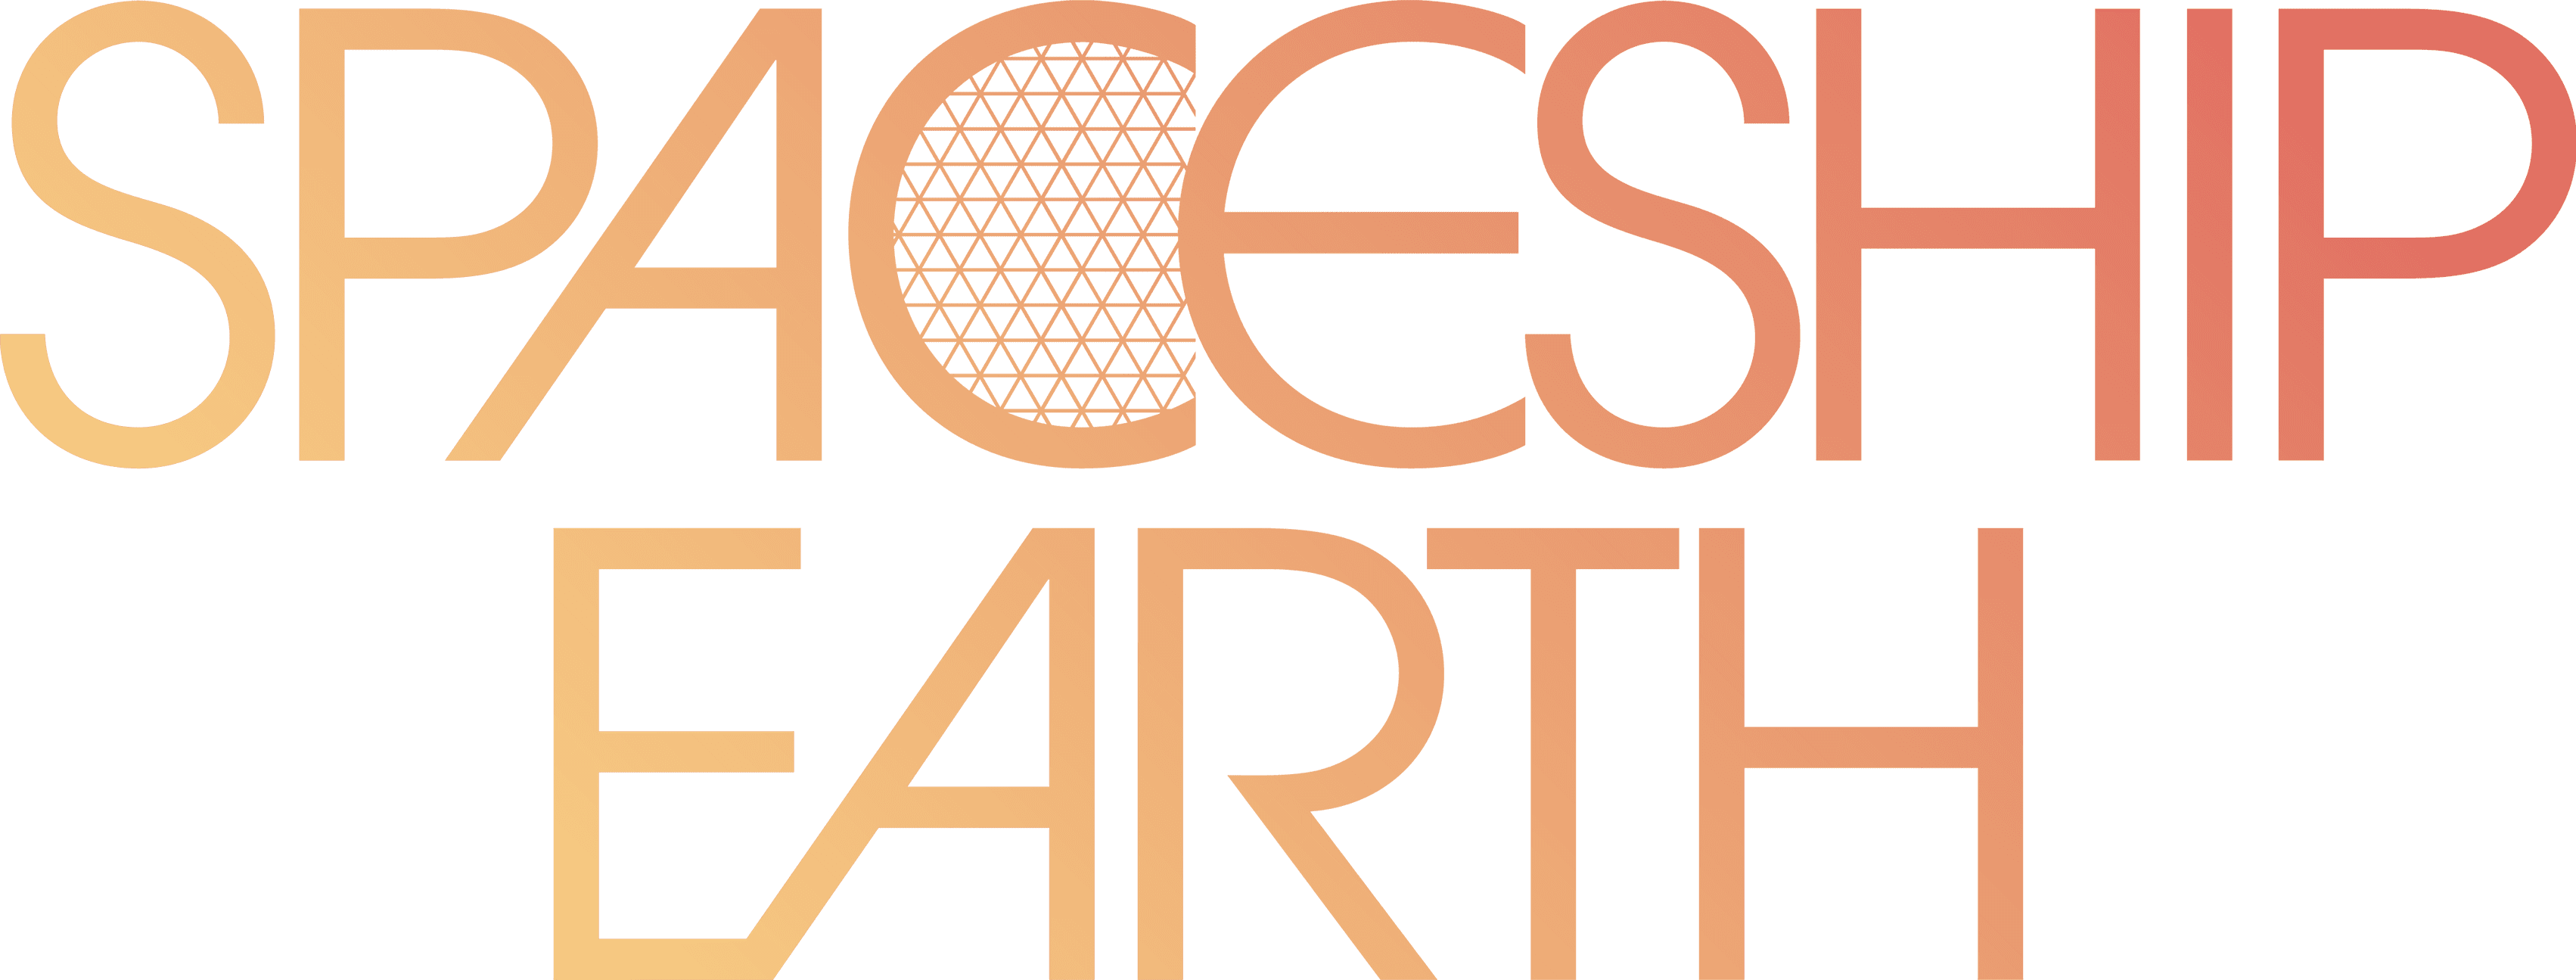 Spaceship Earth logo